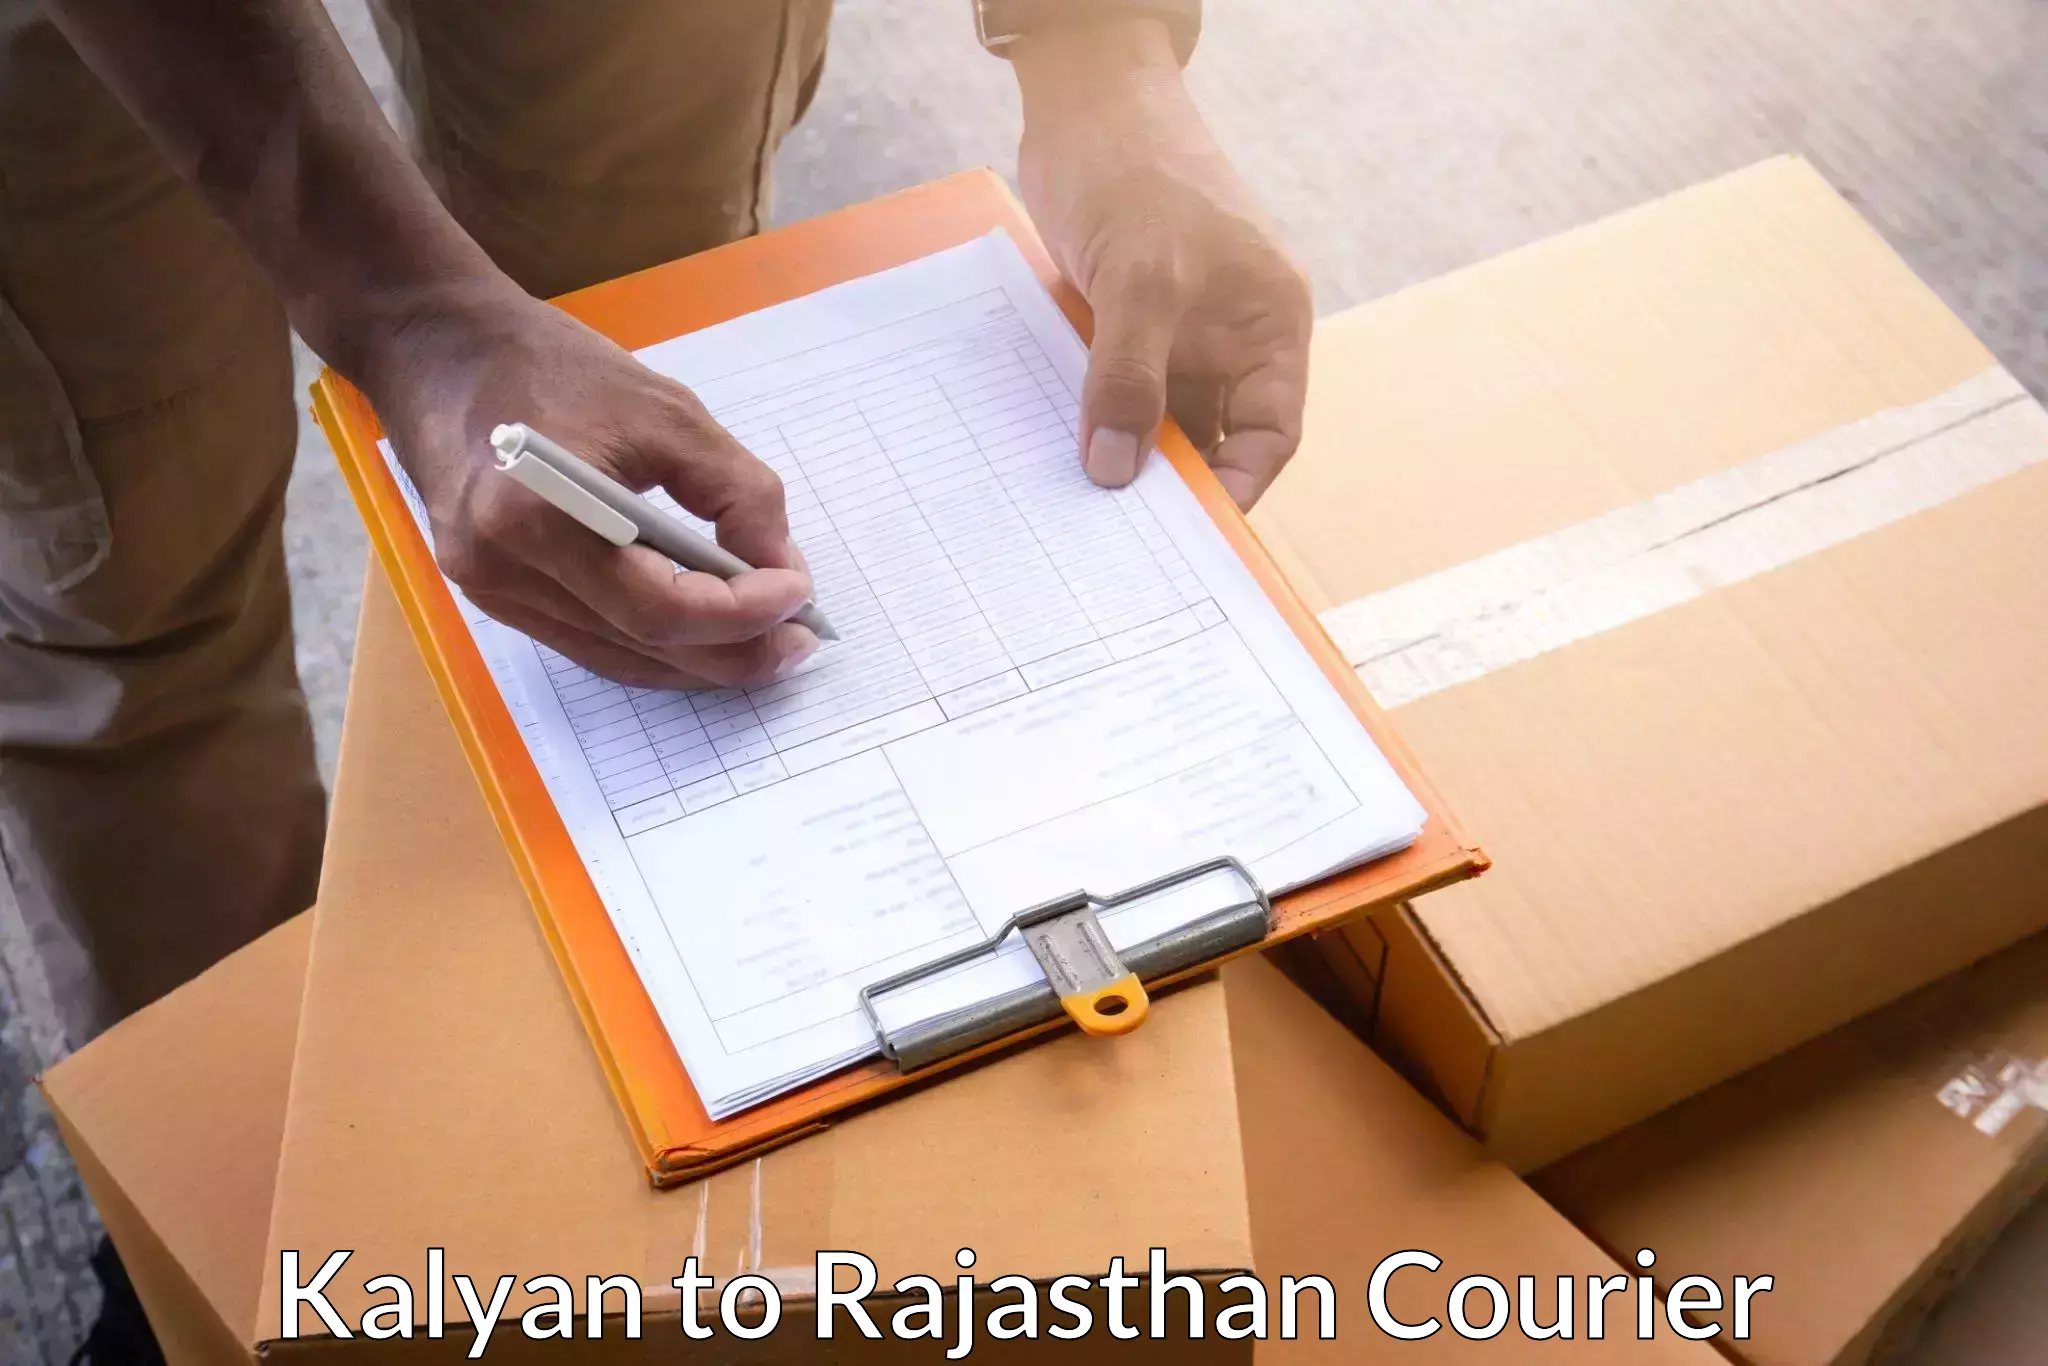 Fast shipping solutions Kalyan to Banswara